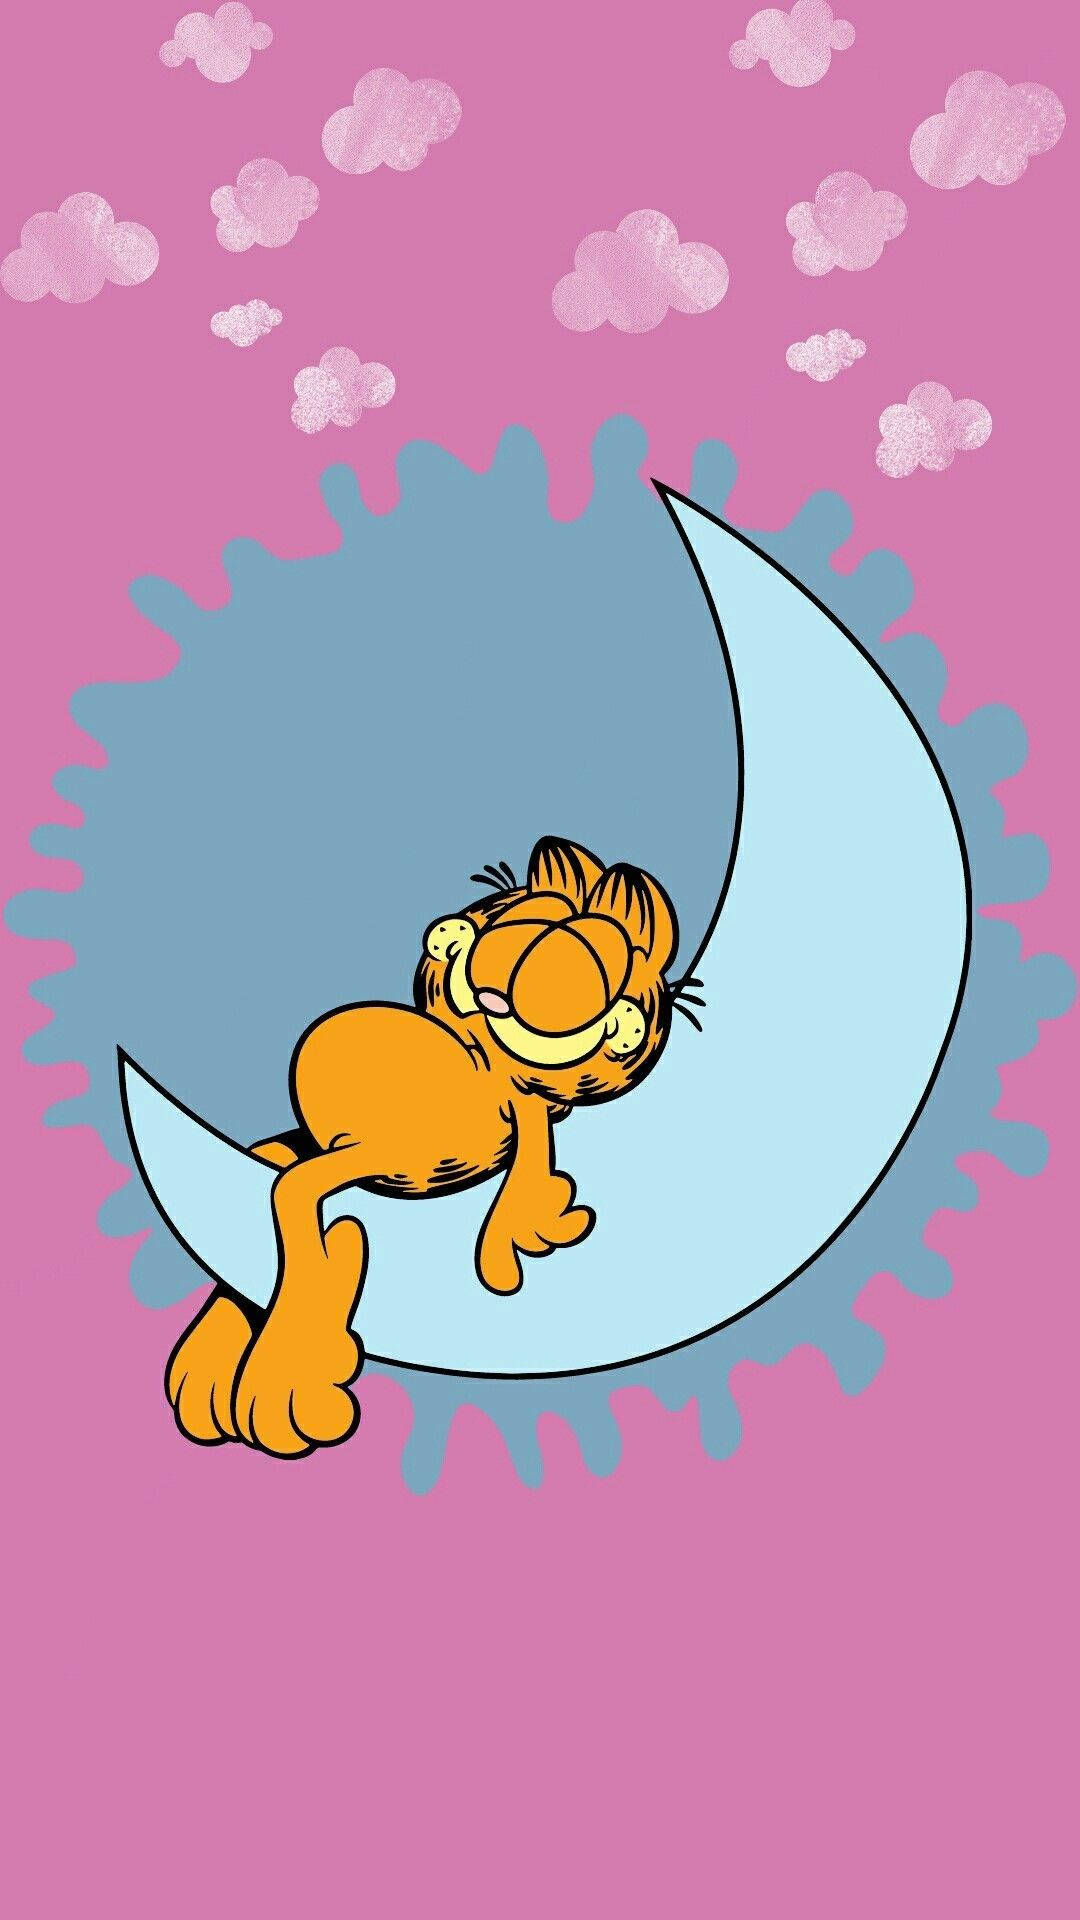 Garfield Sleeping On The Moon